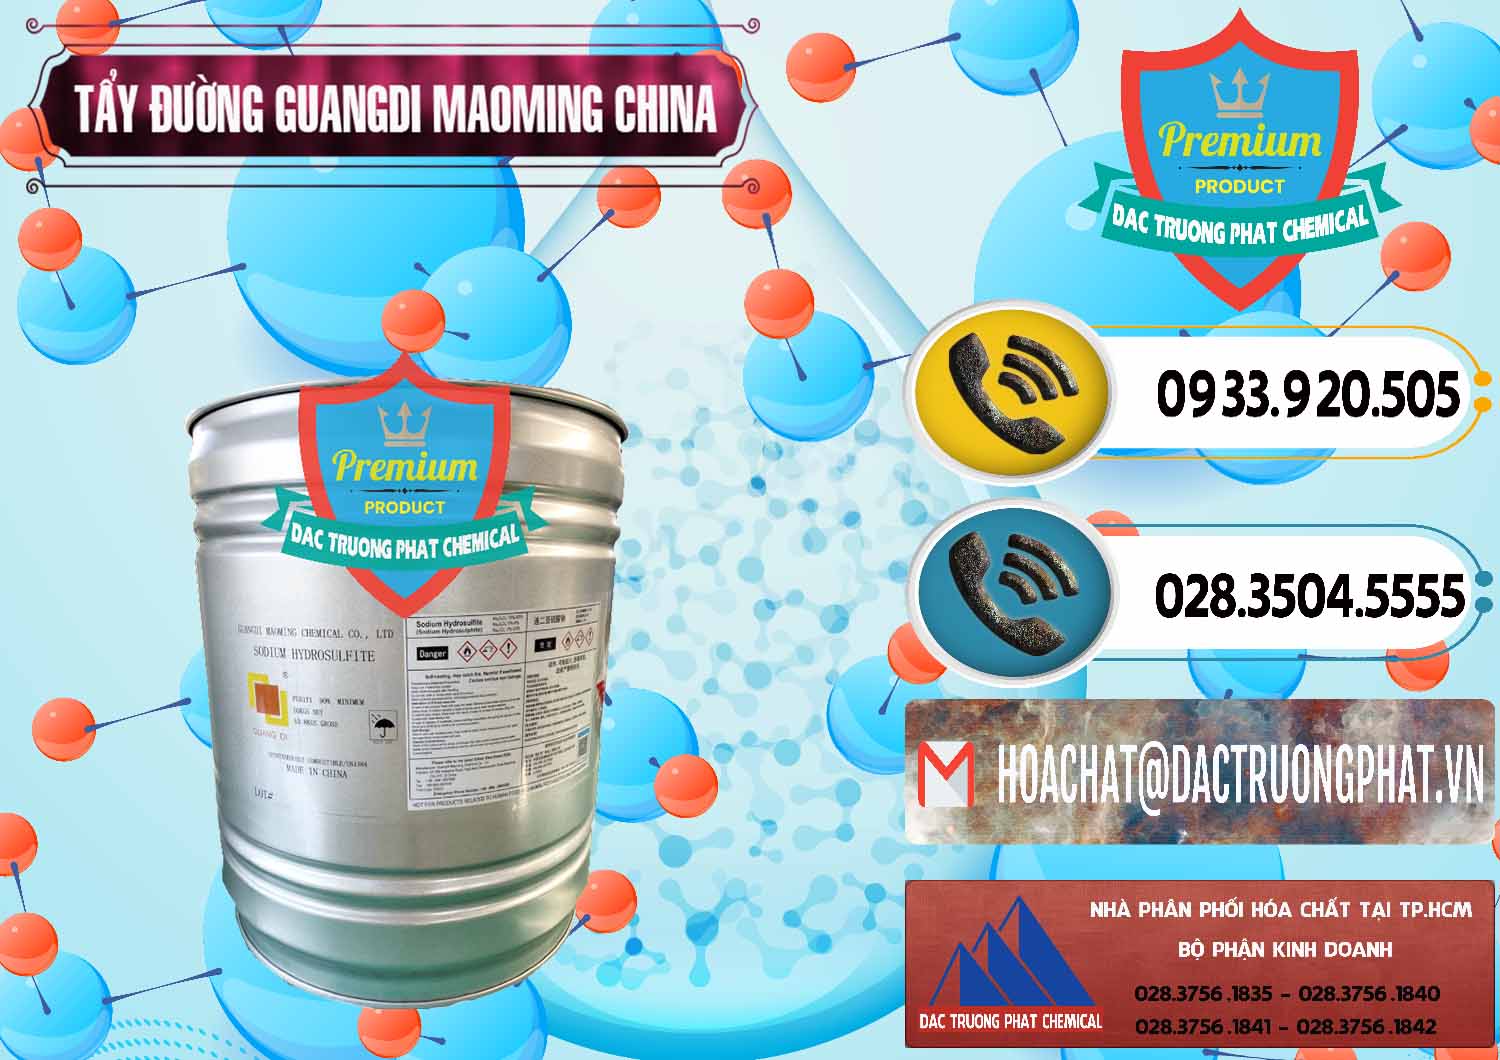 Công ty chuyên phân phối & bán Tẩy Đường - NA2S2O4 Guangdi Maoming Thùng Xám Trung Quốc China - 0402 - Phân phối & kinh doanh hóa chất tại TP.HCM - hoachatdetnhuom.vn